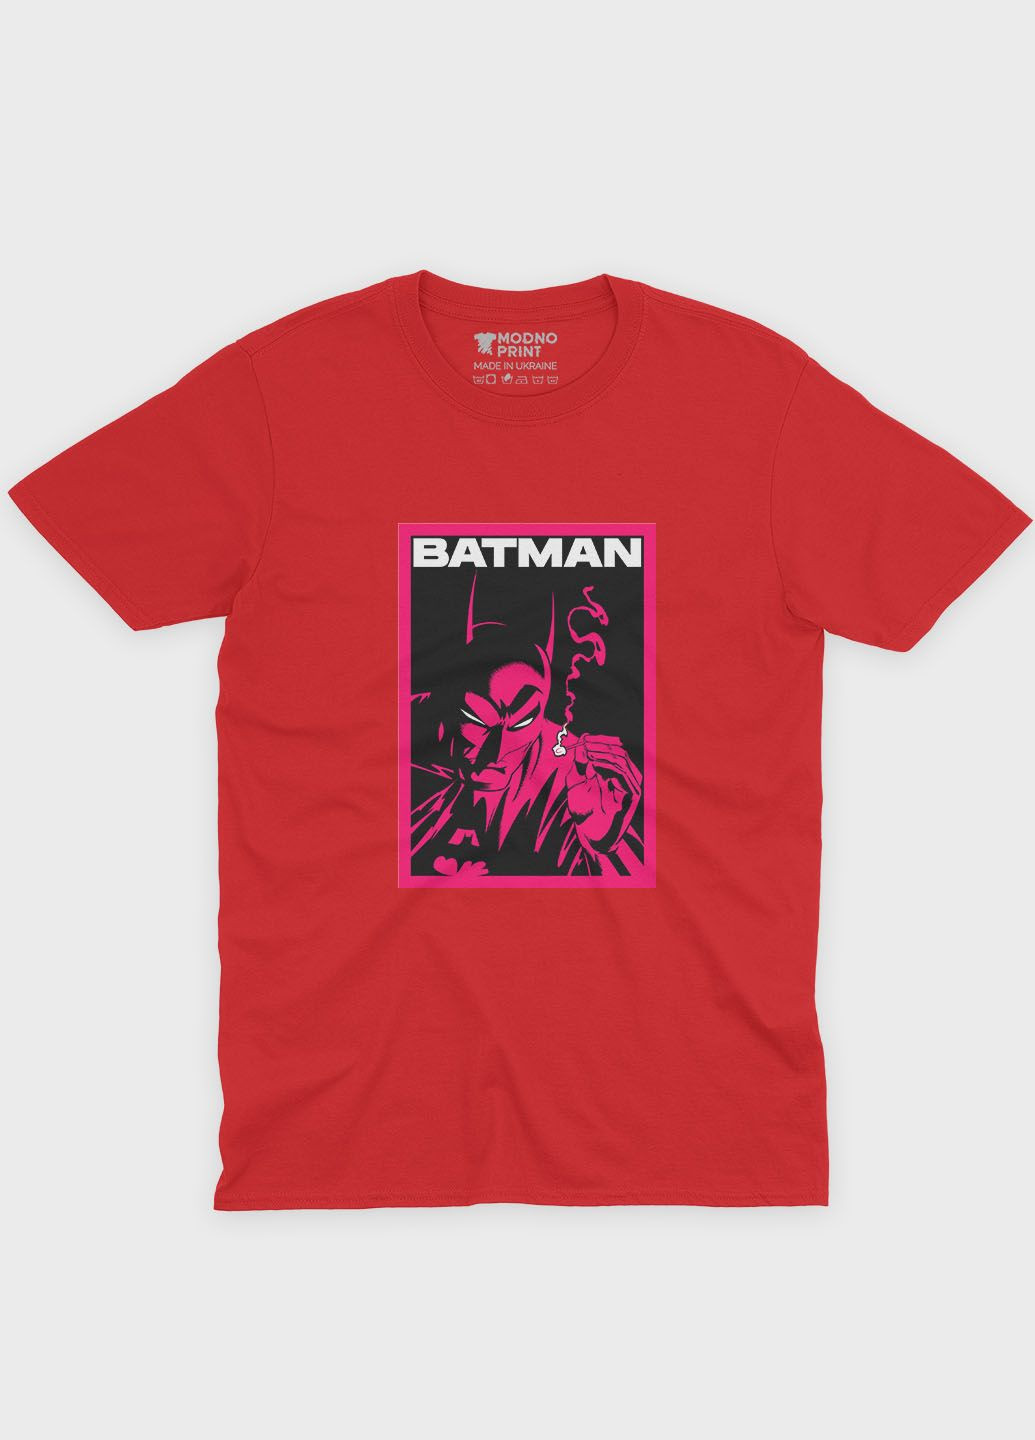 Красная демисезонная футболка для девочки с принтом супергероя - бэтмен (ts001-1-sre-006-003-023-g) Modno